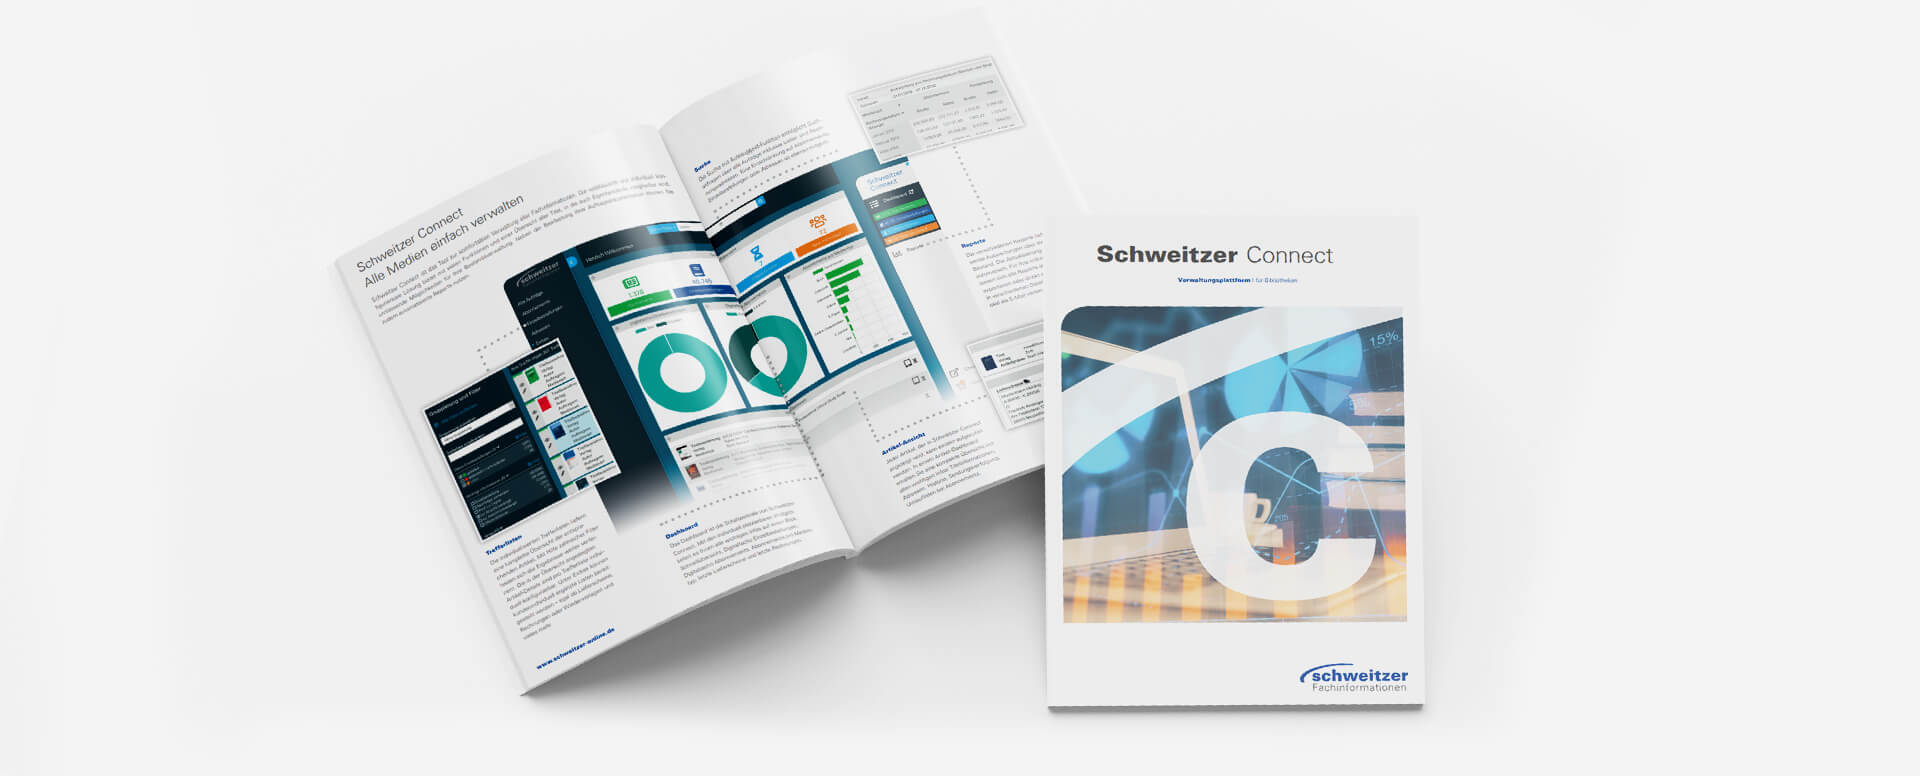 e Procurement Schweitzer Connect PDF ICONPARC